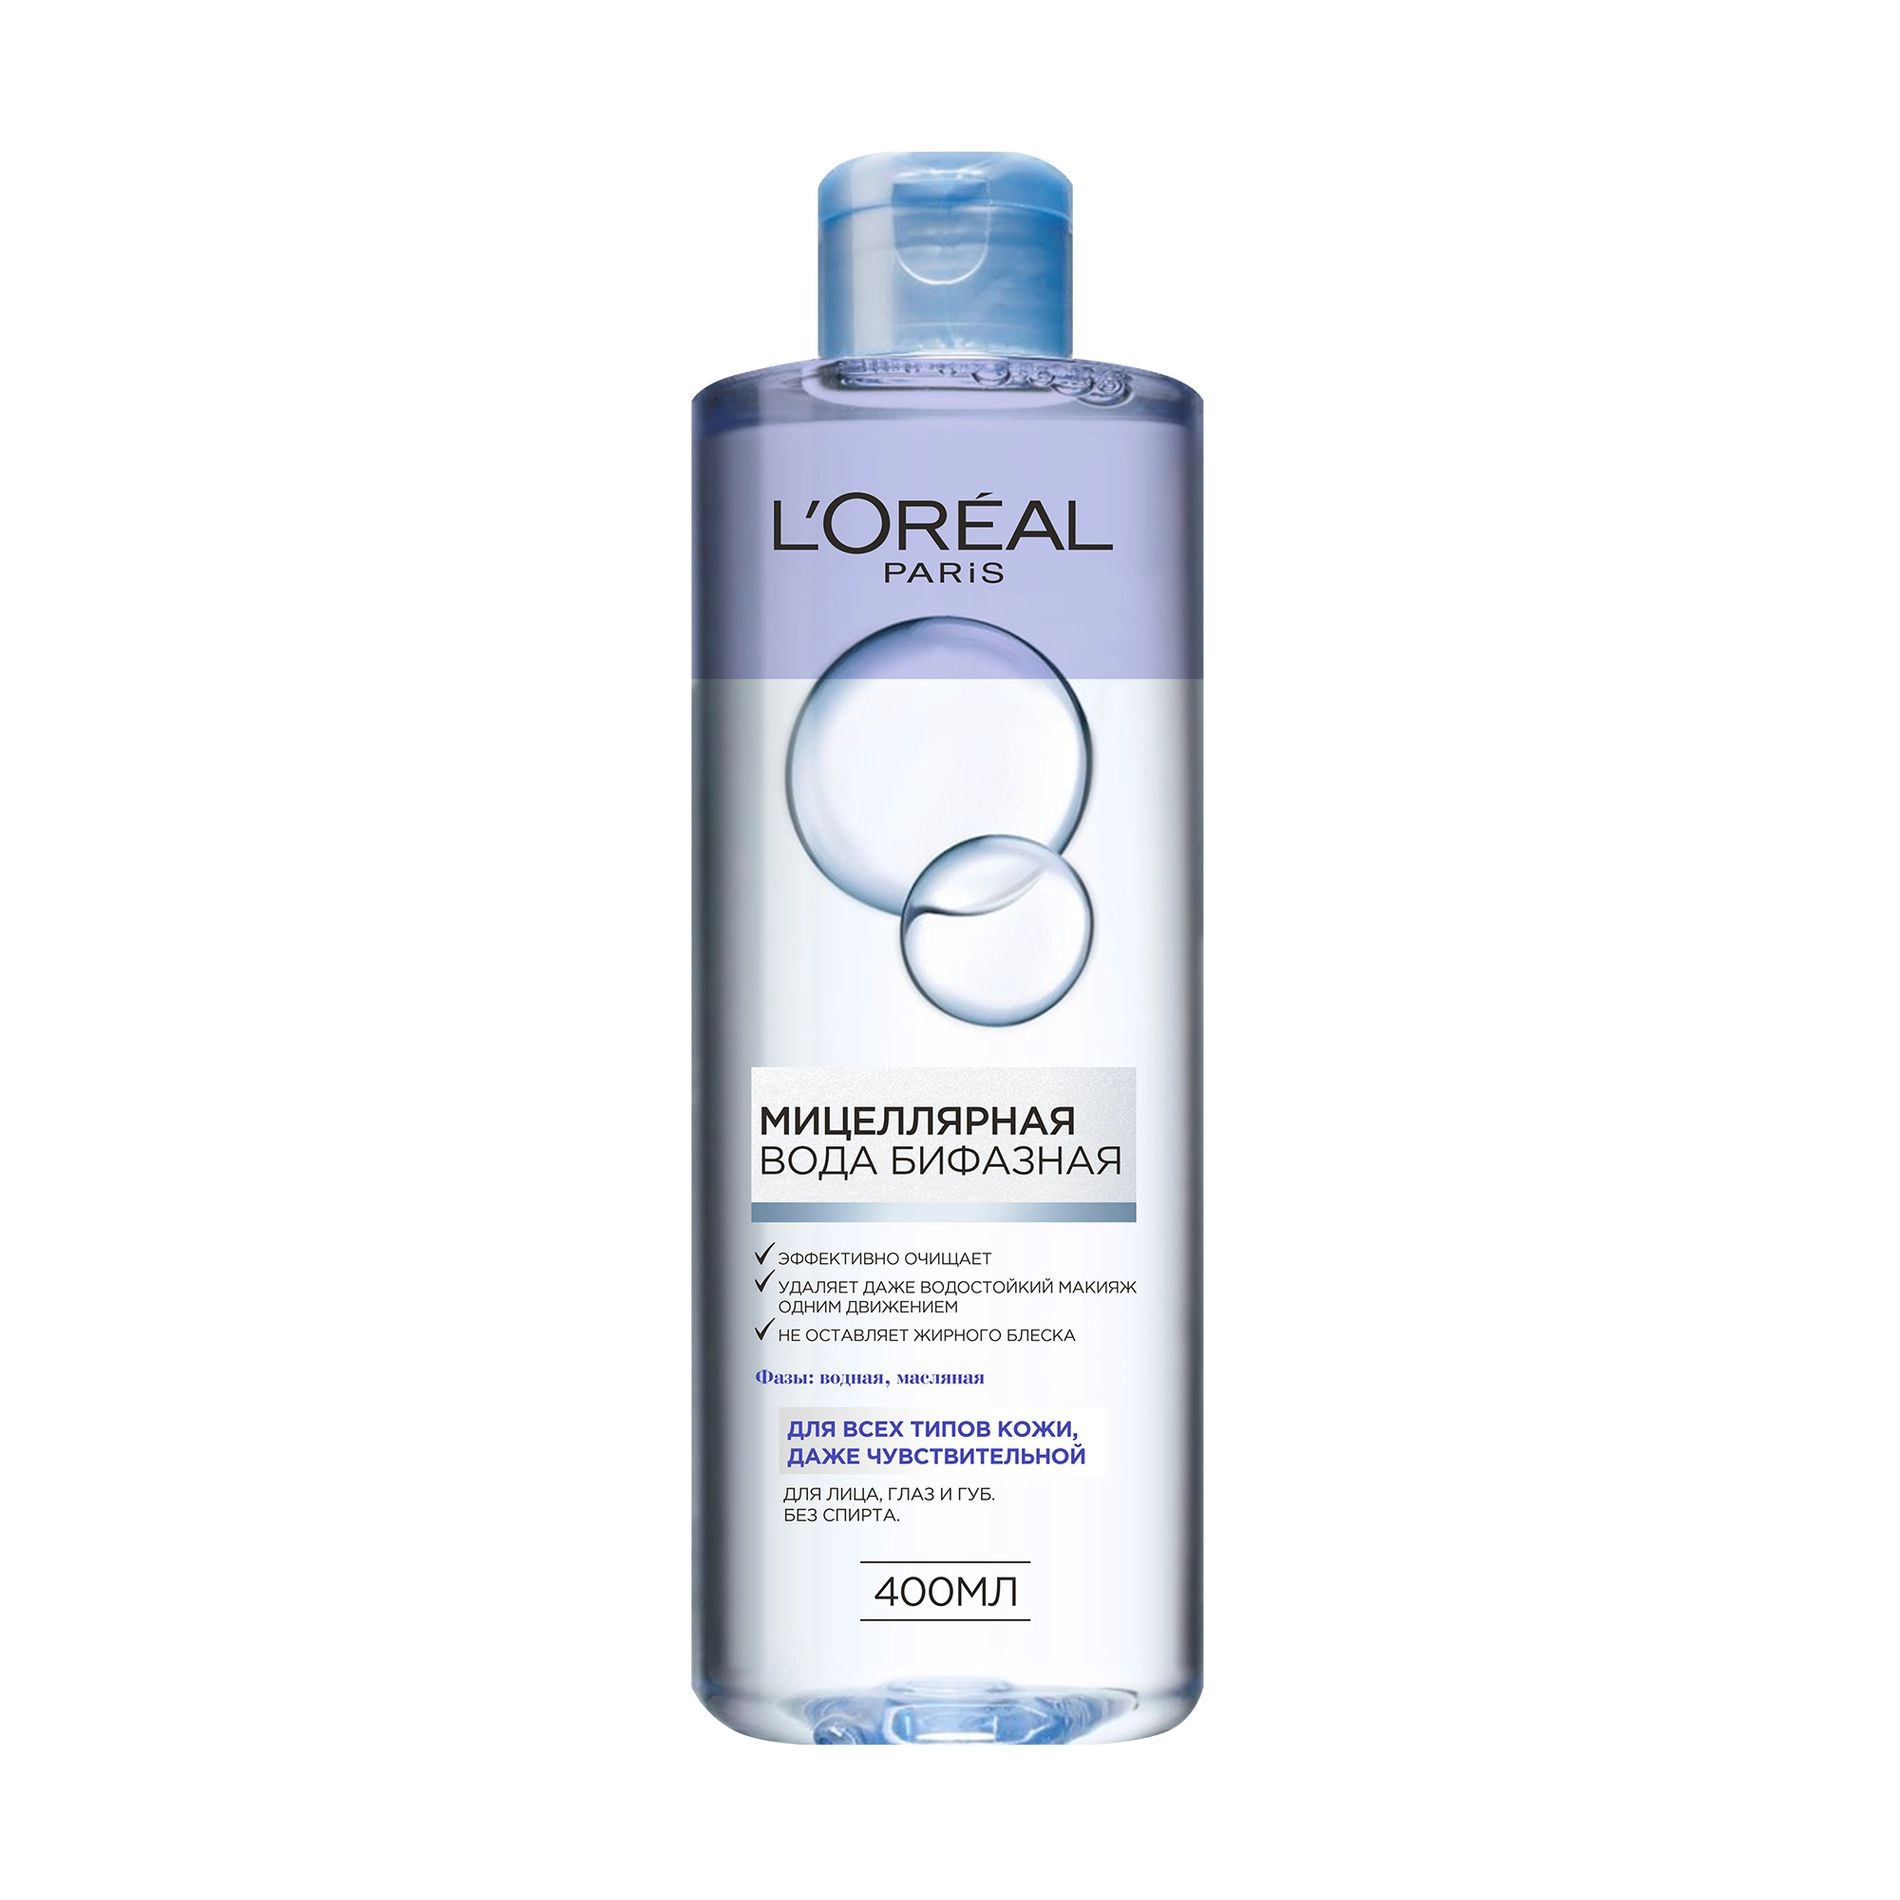 L’Oreal Paris Бифазная мицеллярная вода Skin Expert для снятия стойкого макияжа, 400 мл - фото N1